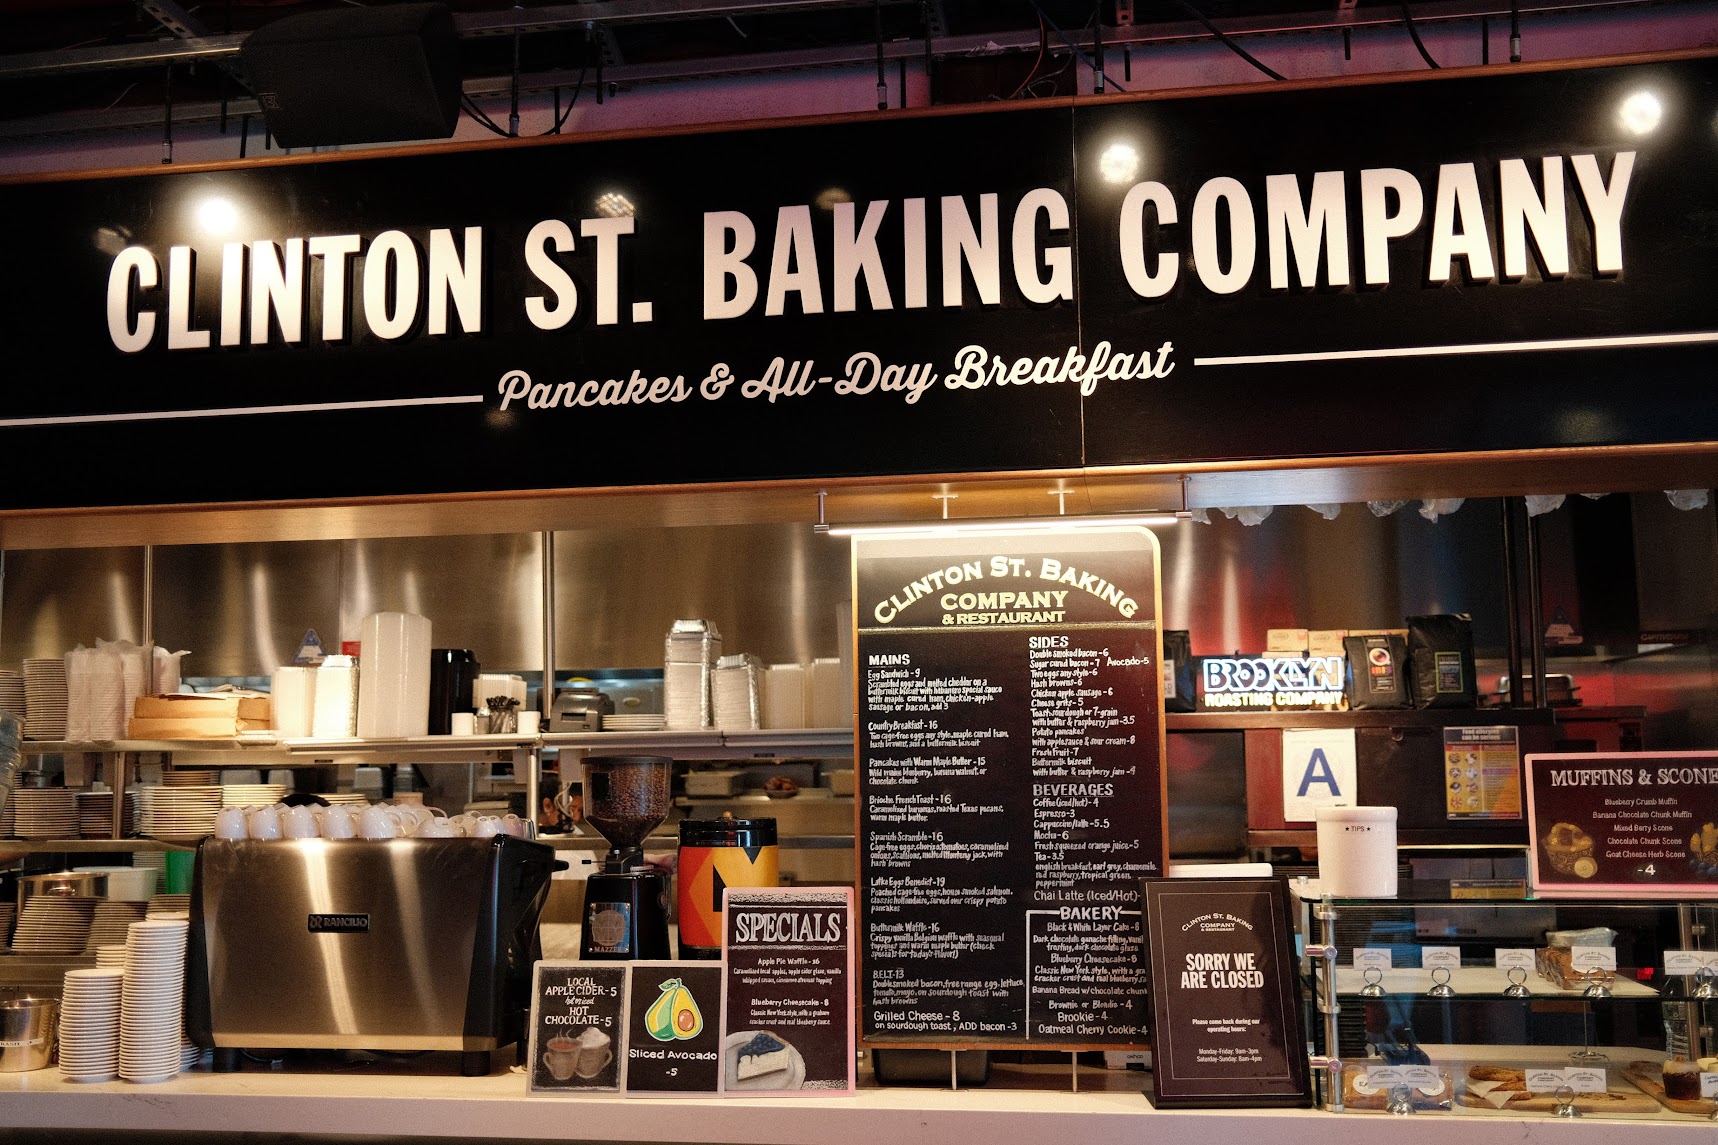 Clinton St. Baking Company